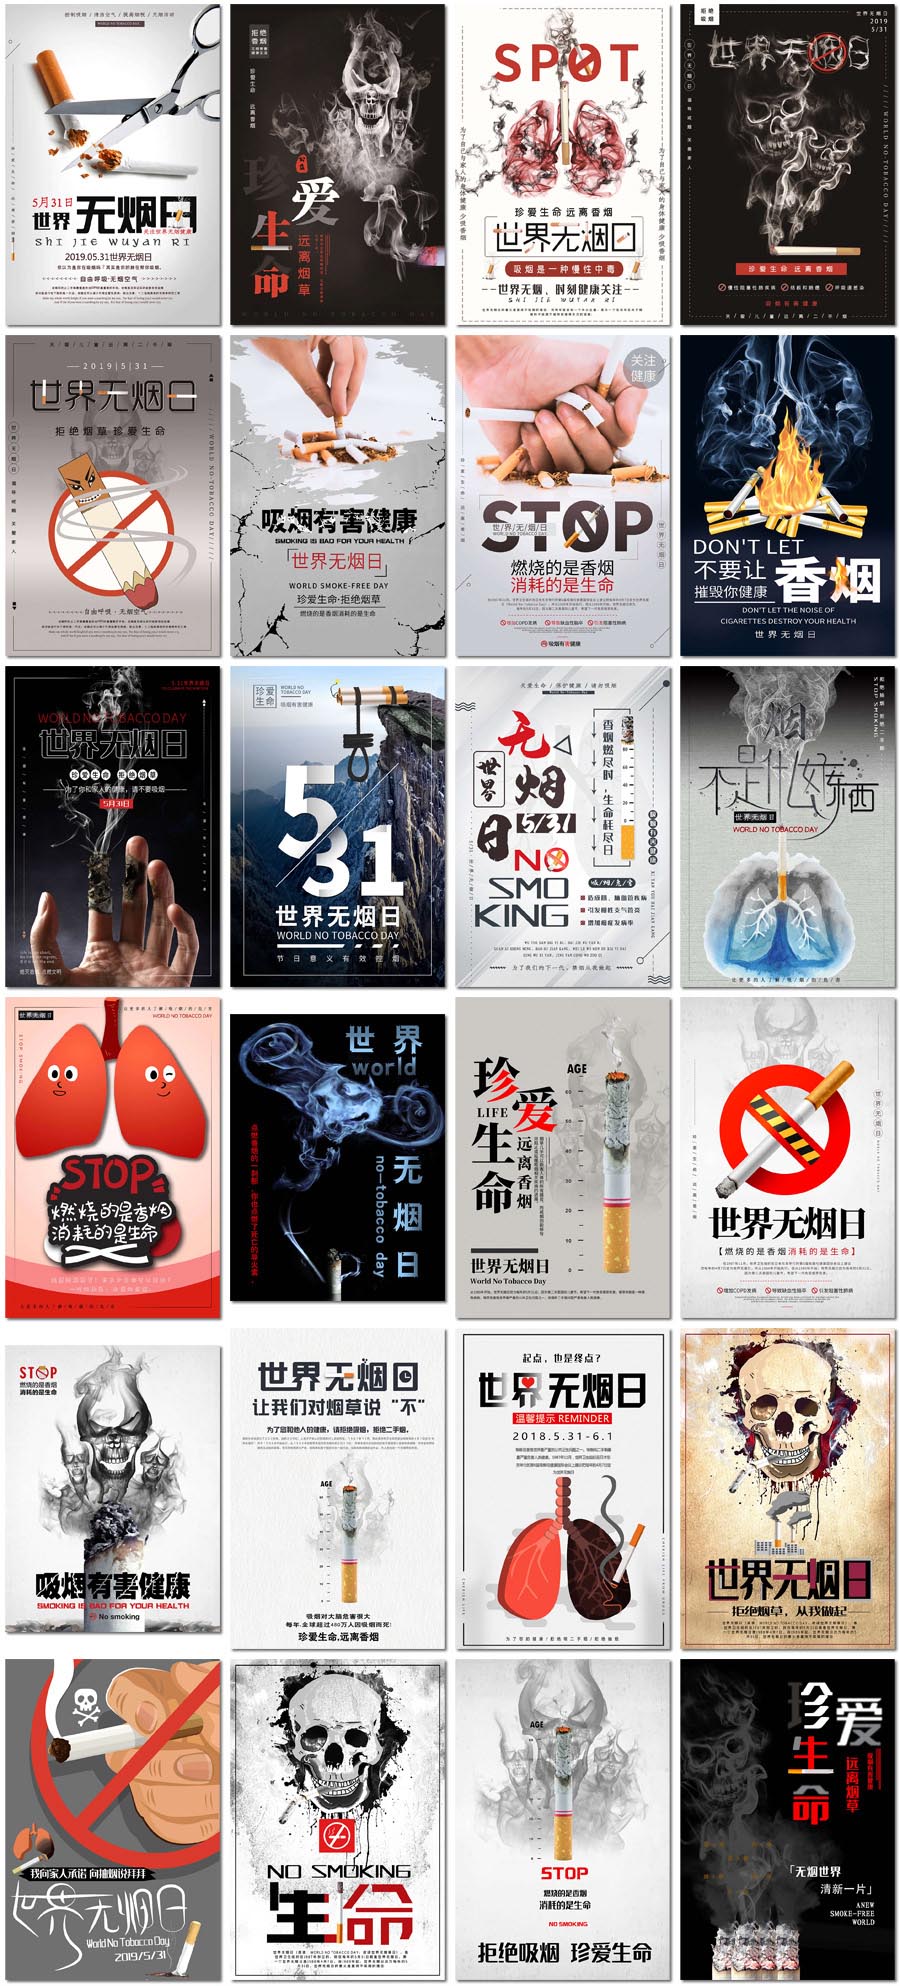 世界无烟日戒烟禁止吸烟肺健康骷髅公益展板海报设计psd模板素材